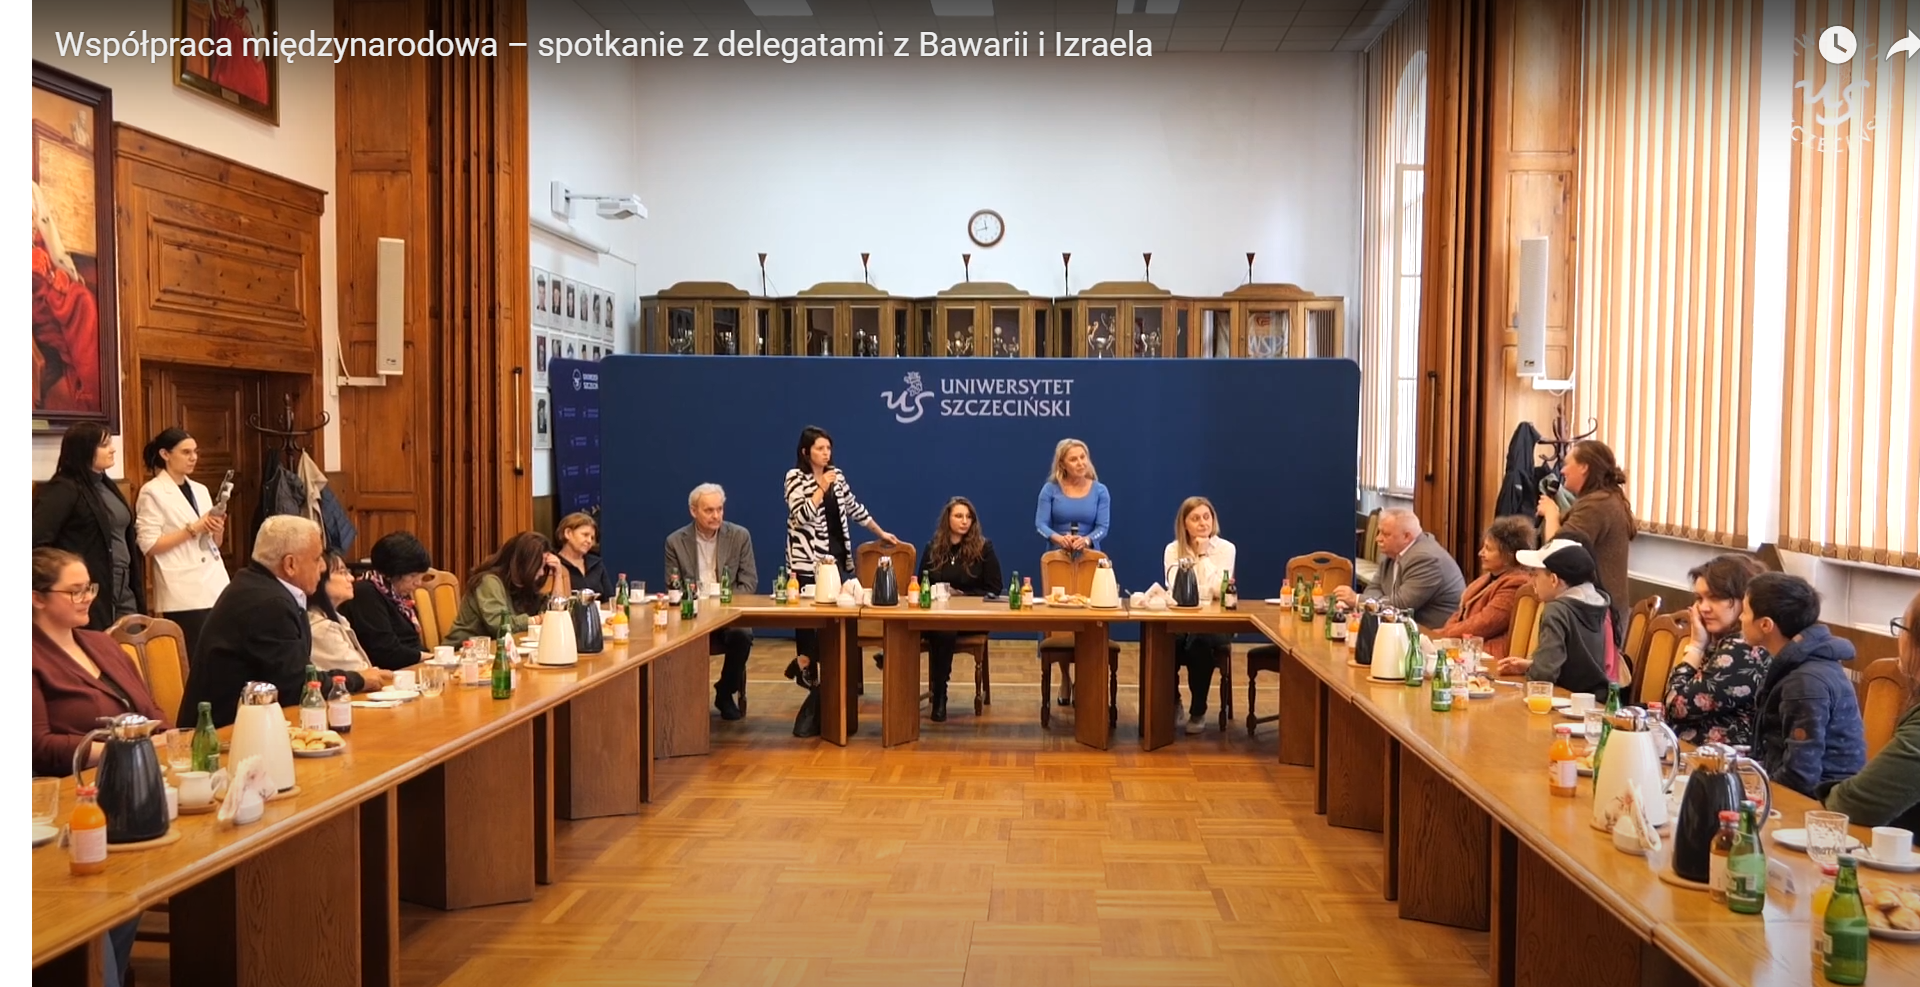 zdjęcie ze spotkania z delegatami Bawarii i Izraela na Uniwersytecie Szczecińskim